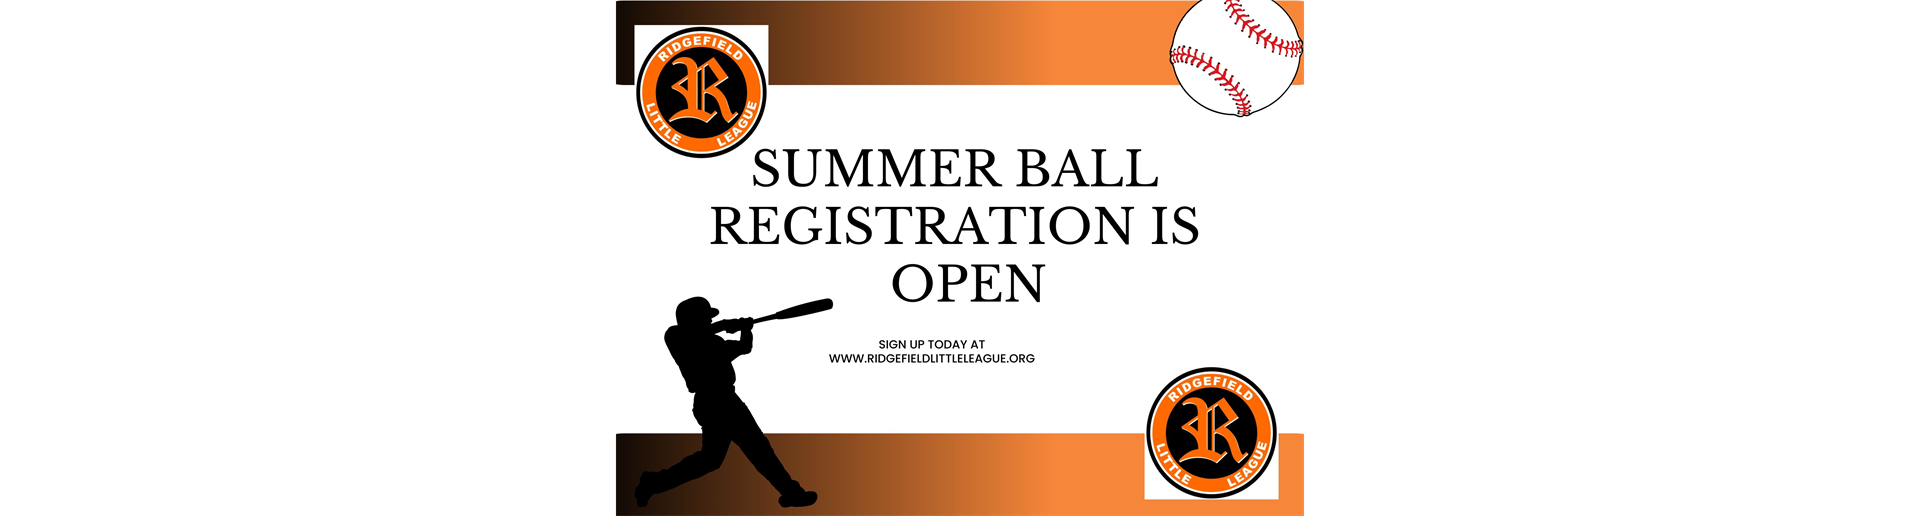 Register for Summer Ball!